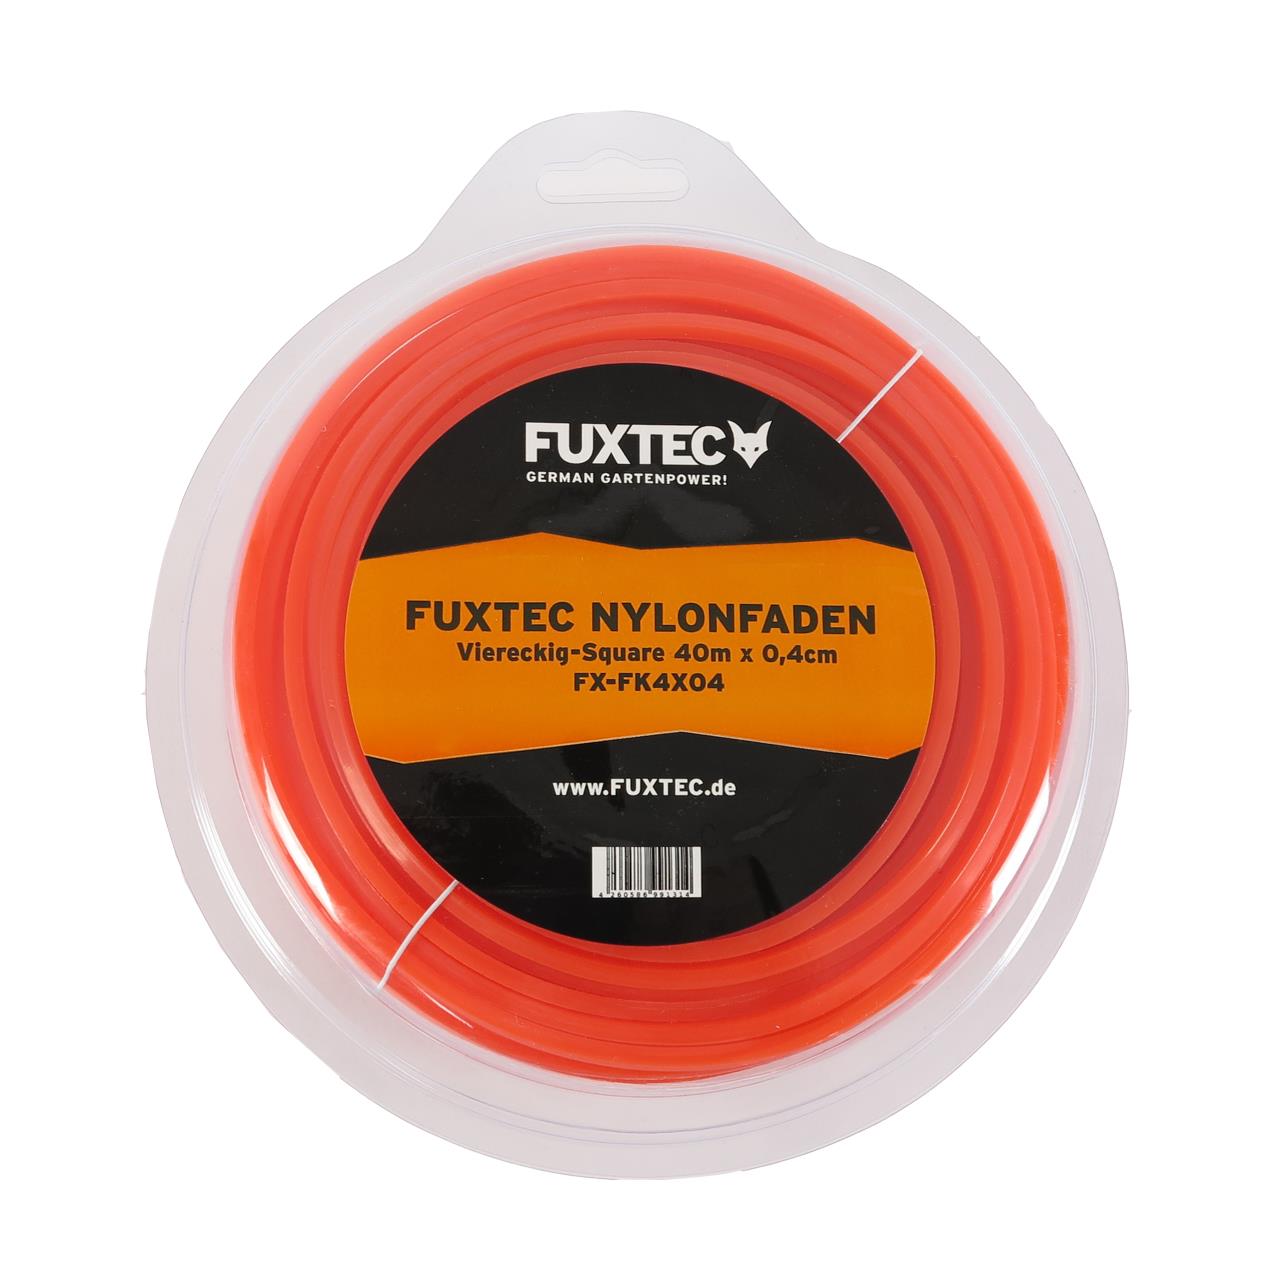 FUXTEC - Fil nylon 40m 0,4cm